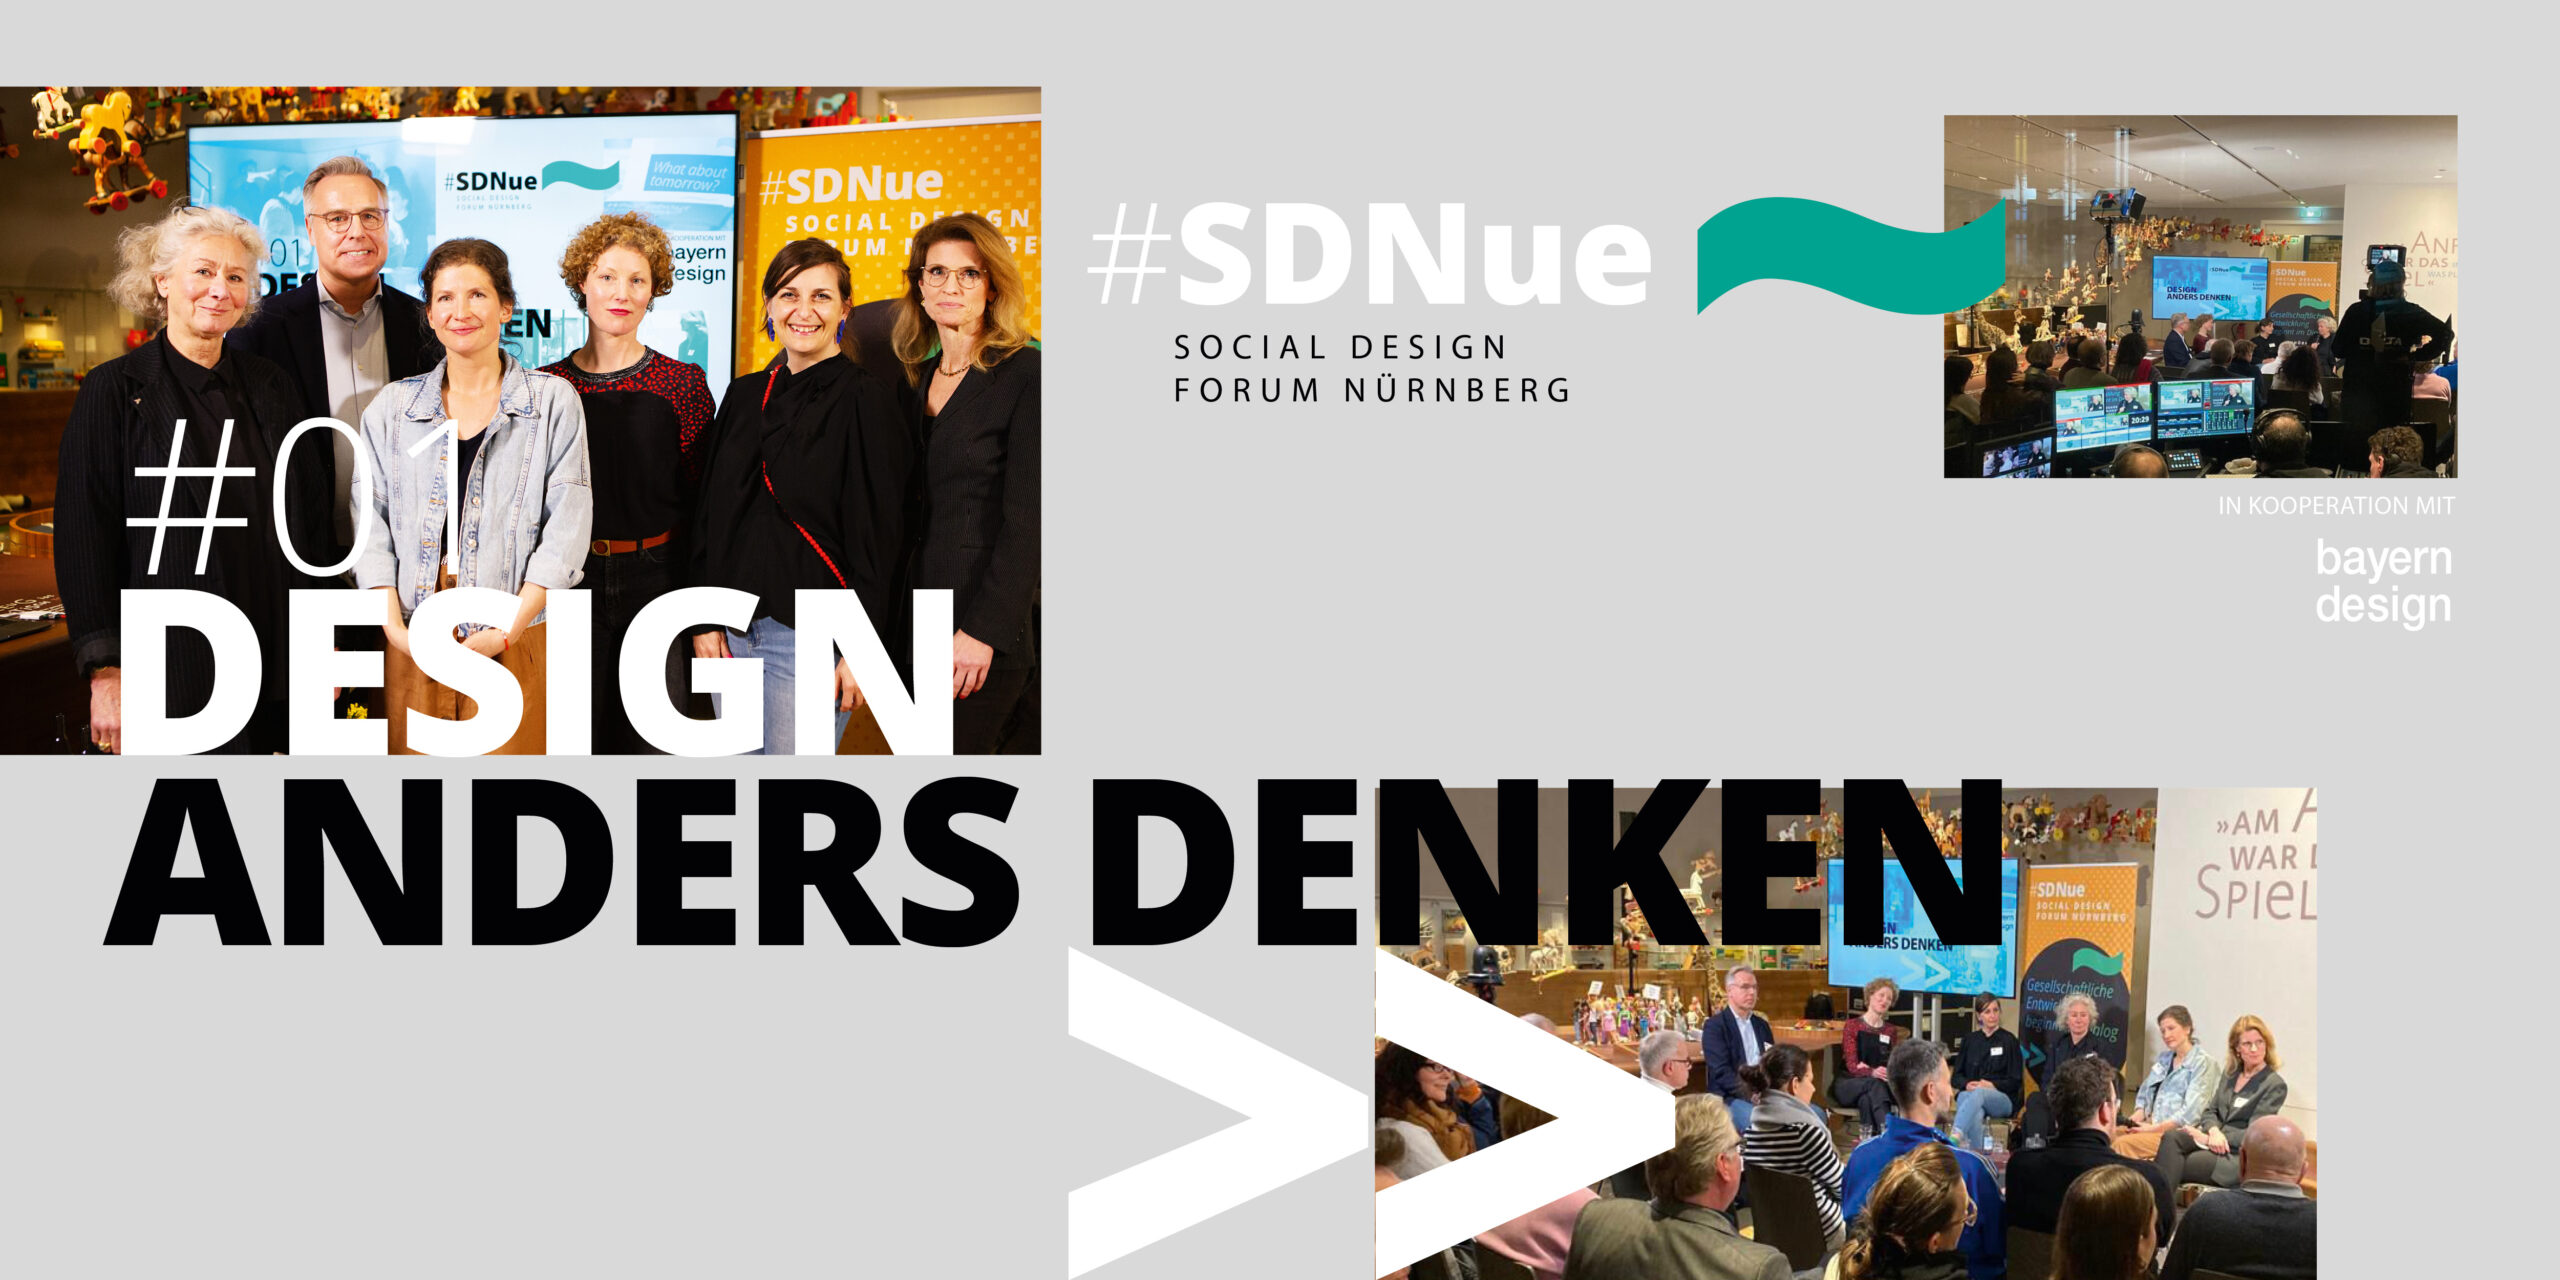 #SDNue Social Design Forum Edition 1, Design anders denken, Key Visual Nachberichterstattung mit Veranstaltungsfotos